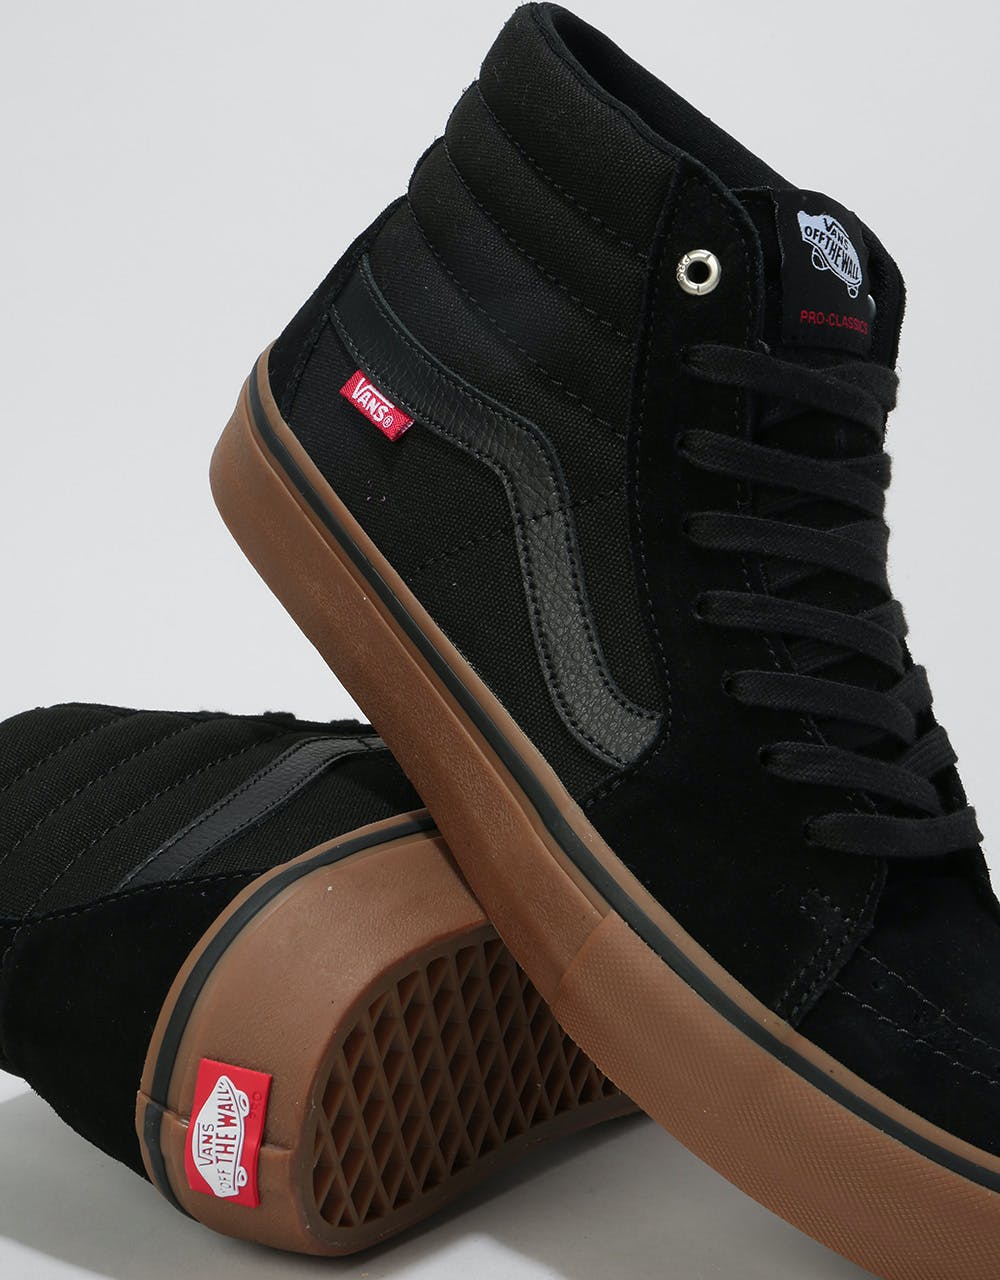 Vans Sk8-Hi Pro Skate Shoes - Black/Gum